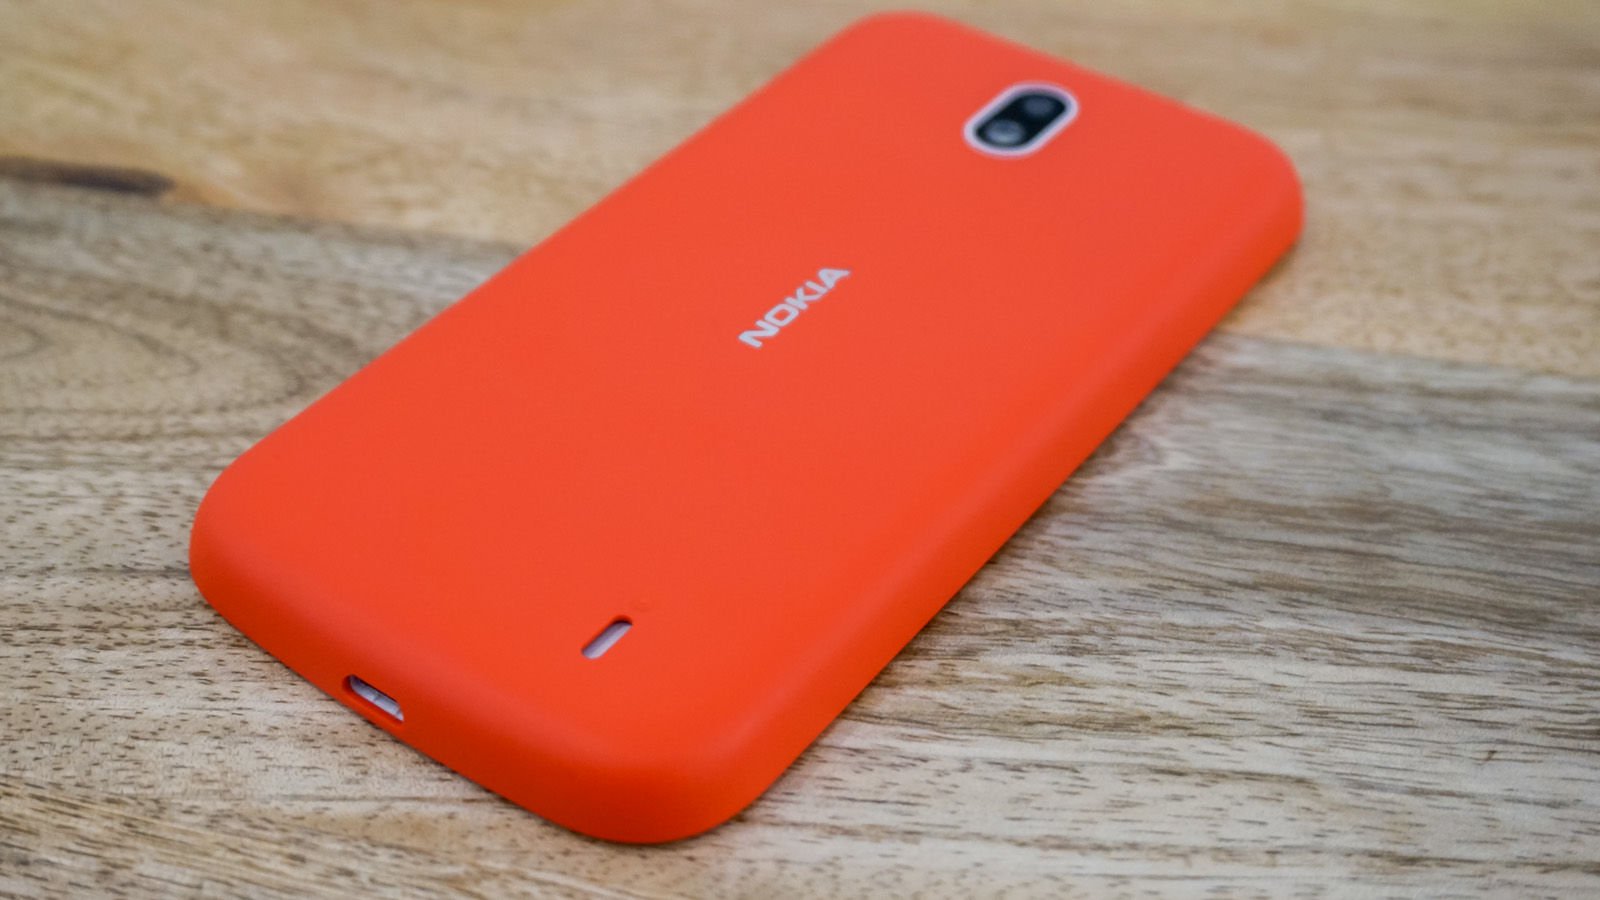 المراجعة الكاملة للهاتف الجديد Nokia 1 أحد أفضل الهواتف الاقتصادية